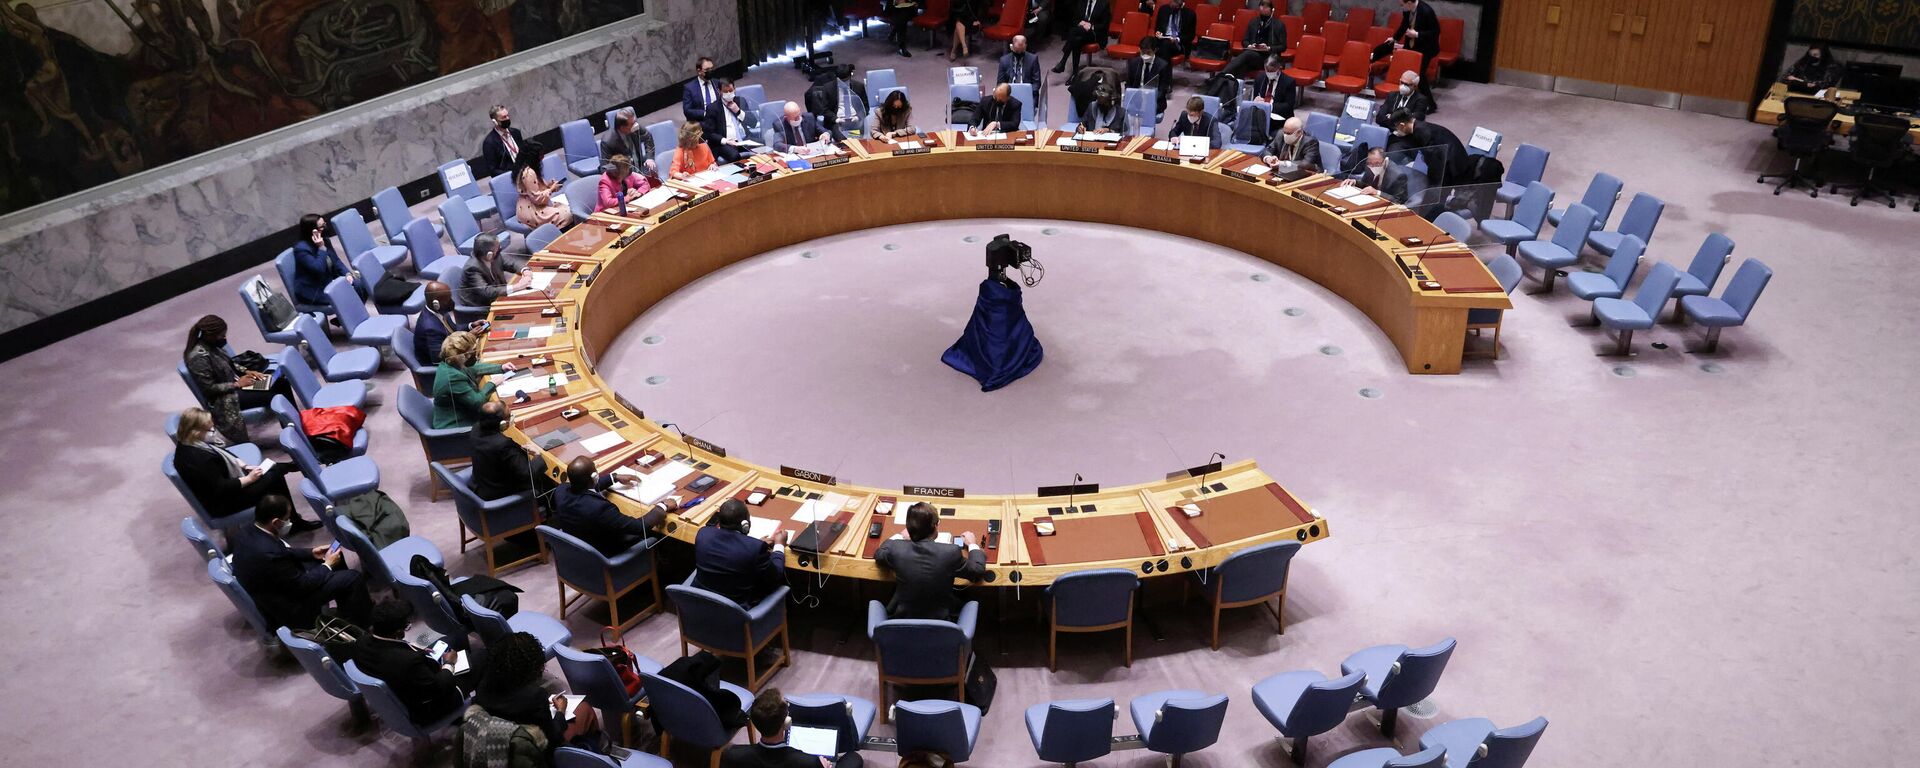 جلسة نقاش مجلس الأمن الدولي حول أزمة أوكرانيا وروسيا، الأمم المتحدة، نيويورك، الولايات المتحدة 31 يناير 2022  - سبوتنيك عربي, 1920, 17.02.2022